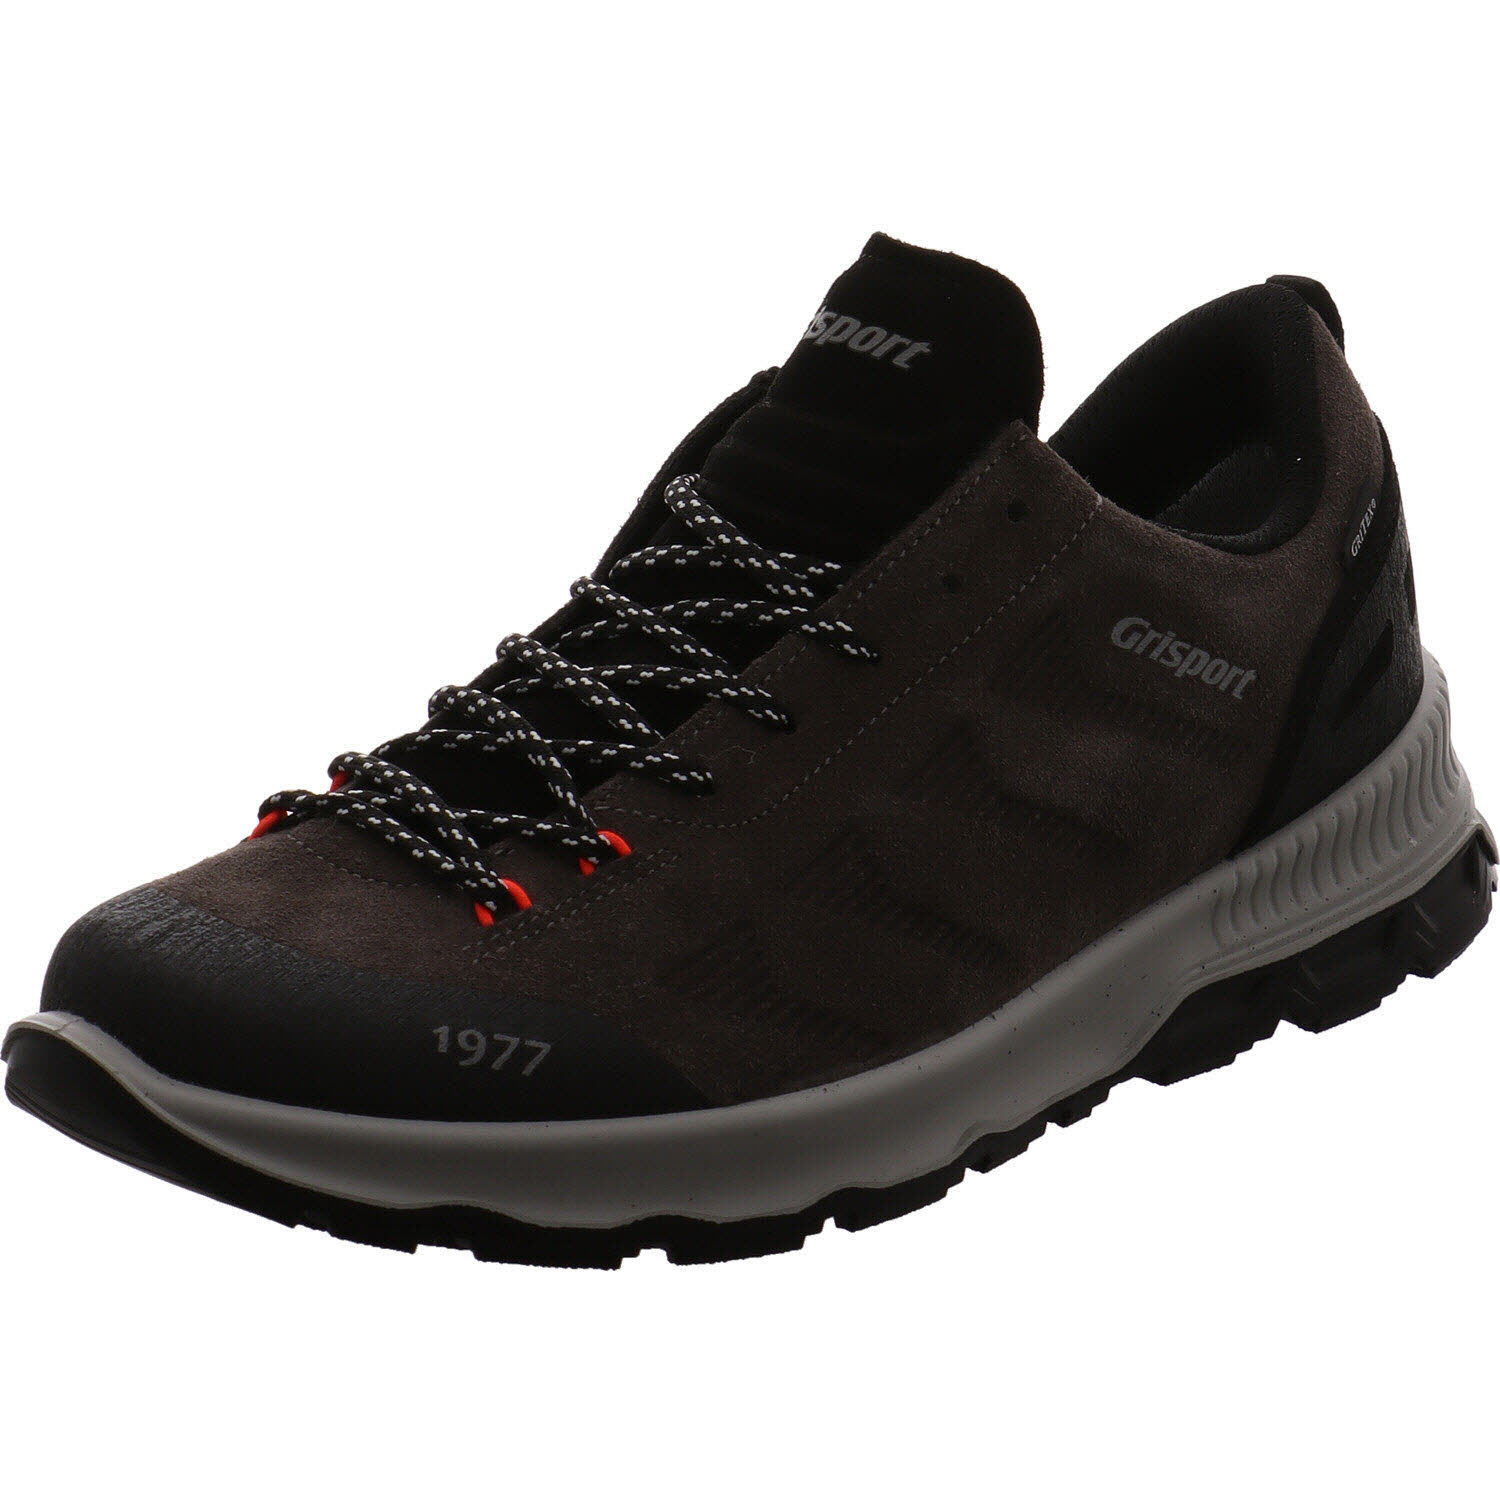 Herren Trekking Schuh von Grisport auch in Grau erhältlich